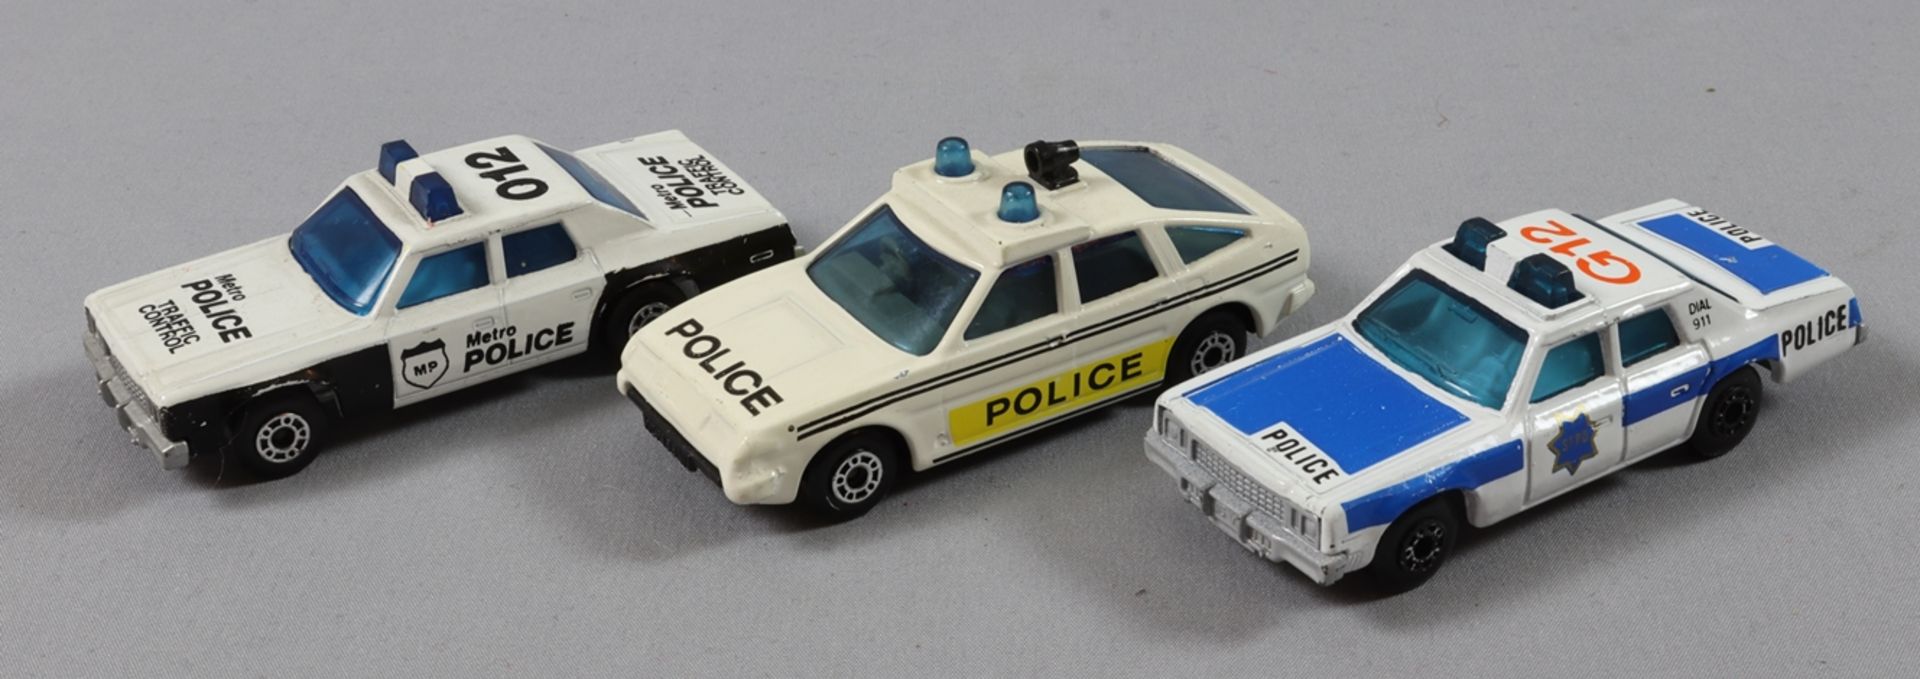 Spielzeug, 3 Matchbox-Autos, Police, 80er Jahre des 20.Jh., England